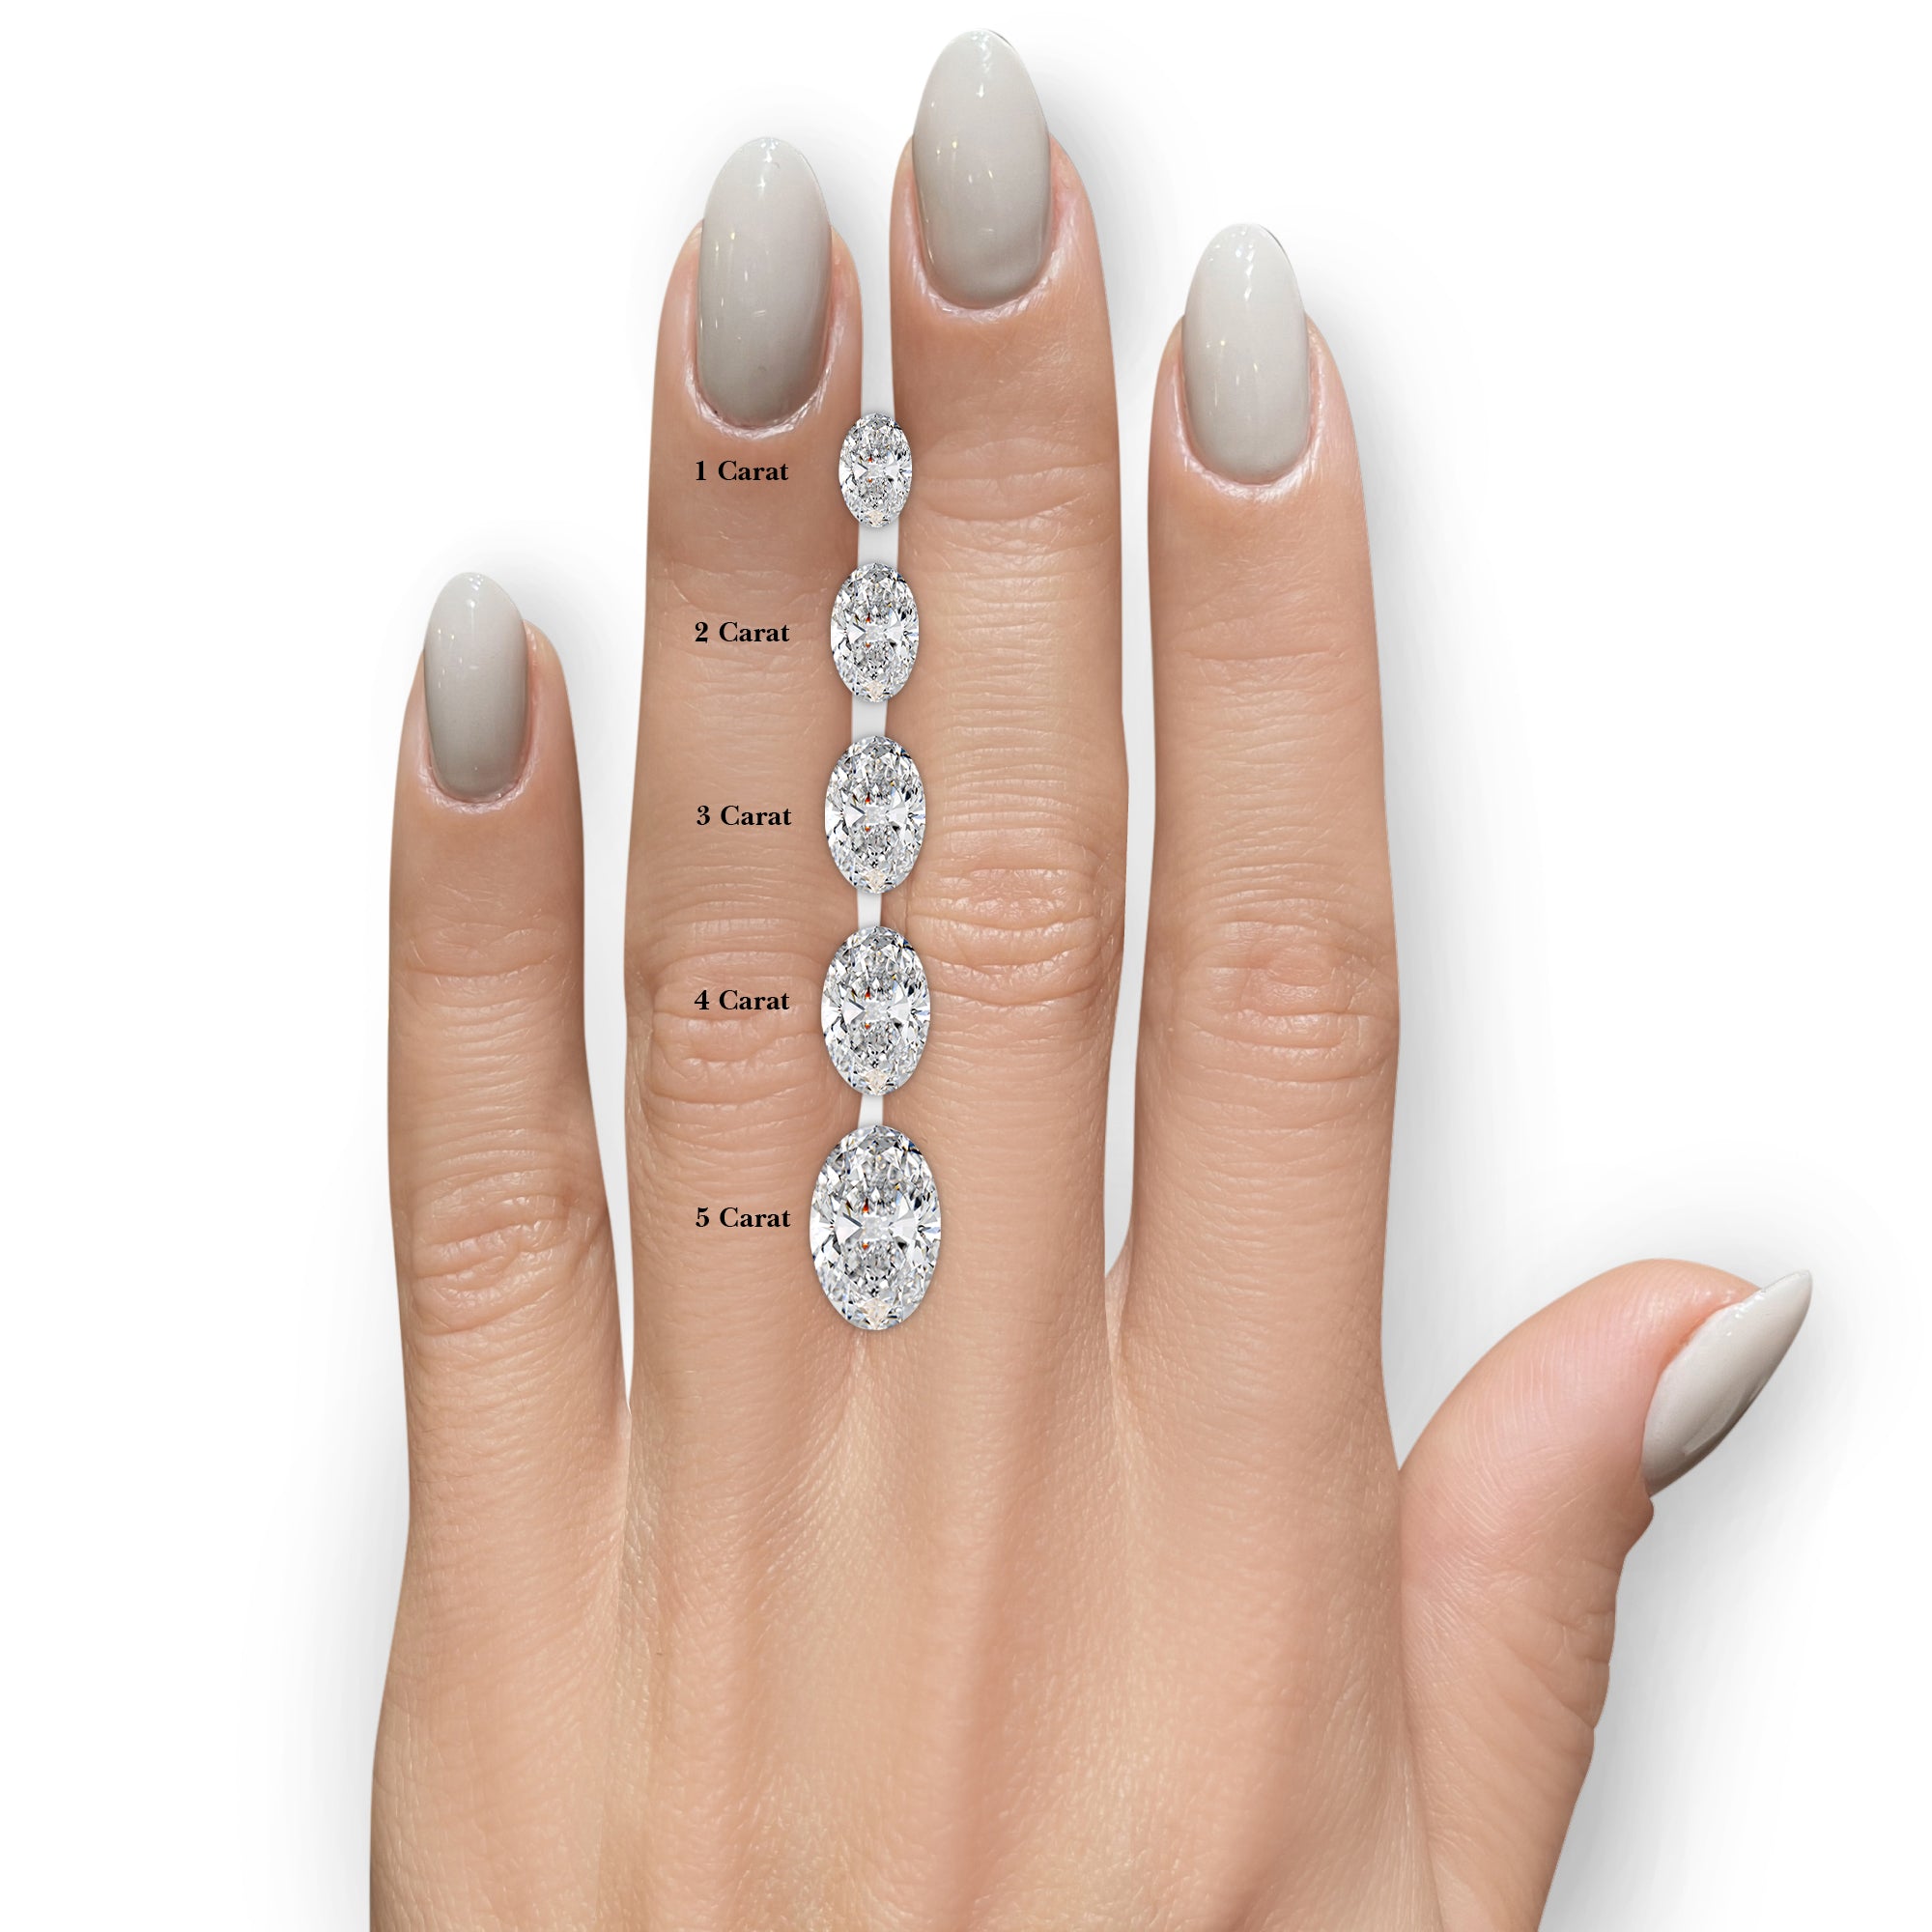 Adaline Lab Grown Diamond Ring -18K White Gold